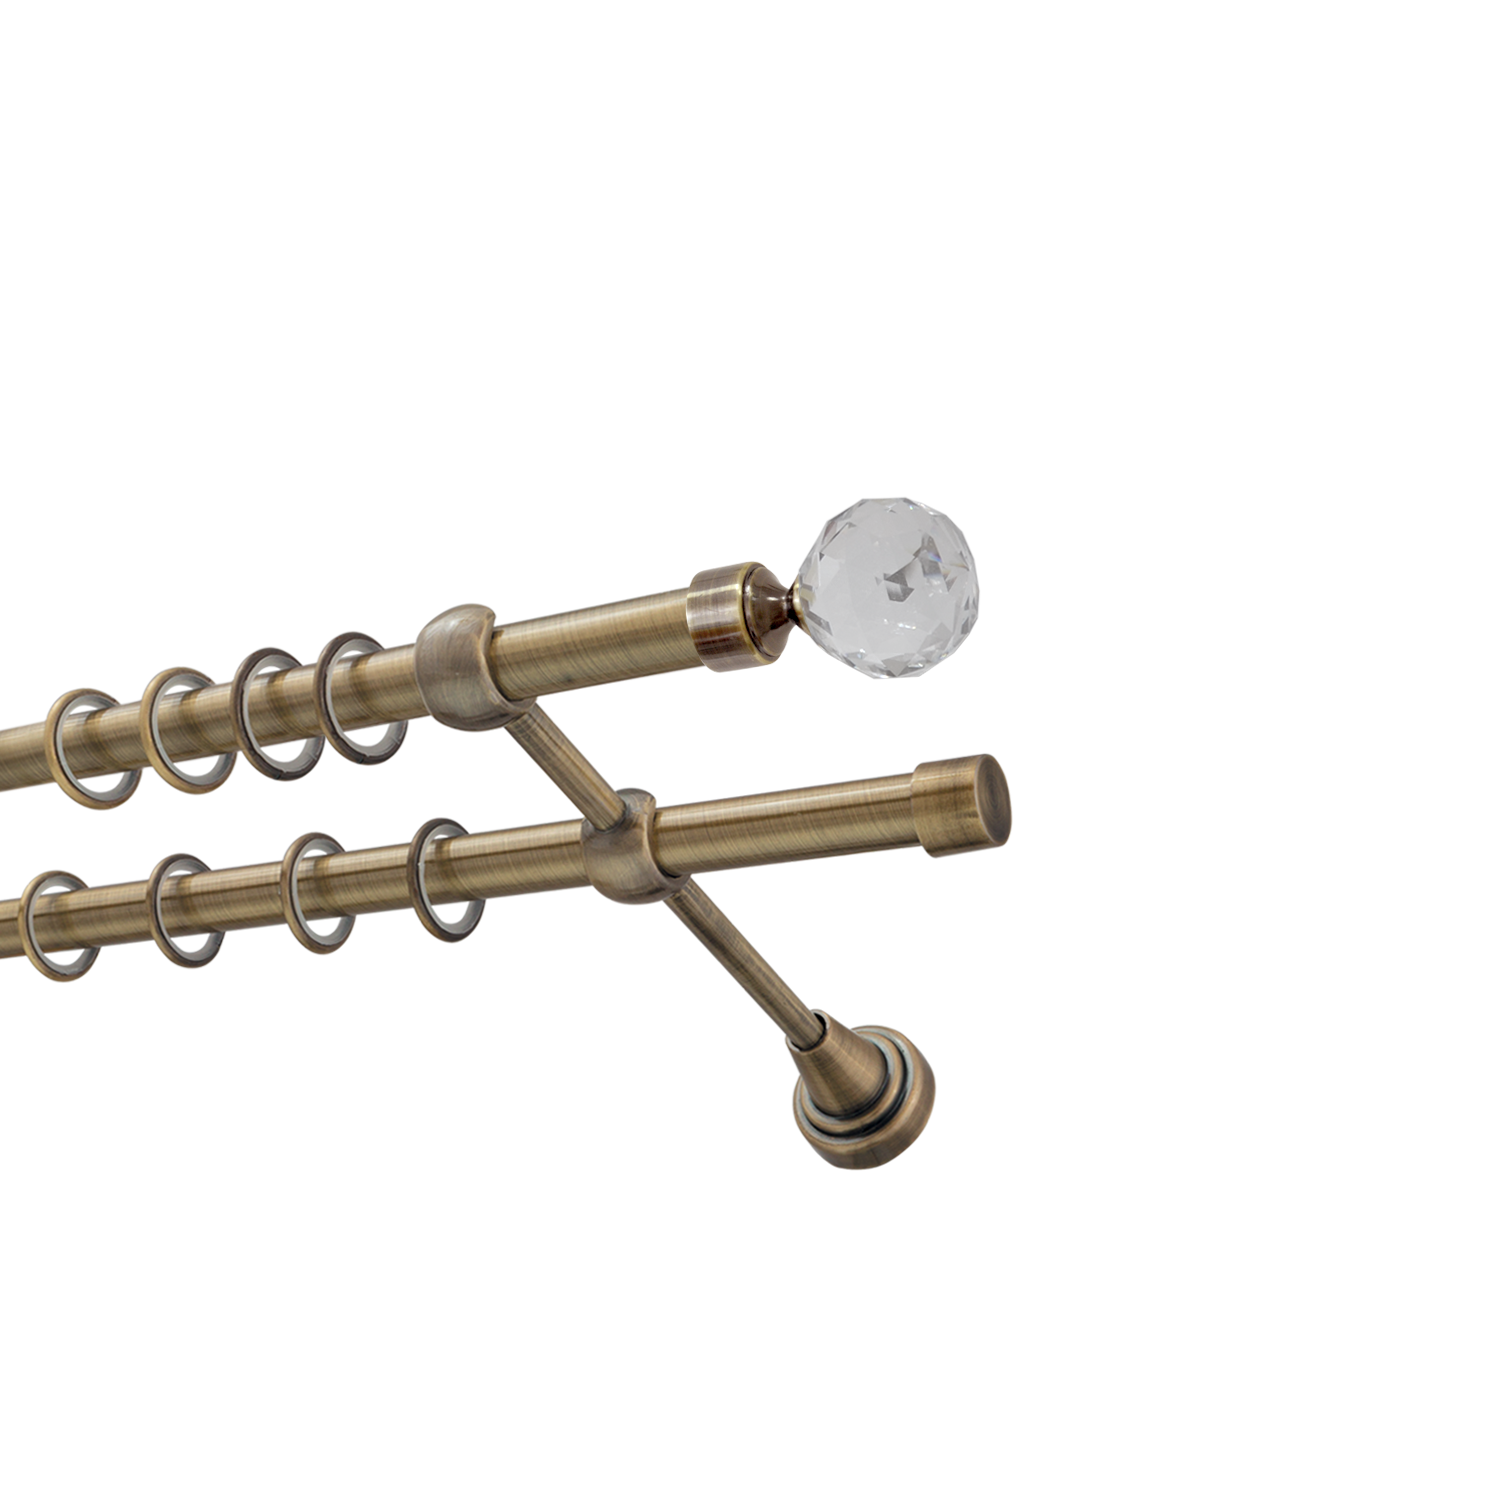 Металлический карниз для штор Карат, двухрядный 16/16 мм, бронза, гладкая штанга, длина 240 см - фото Wikidecor.ru